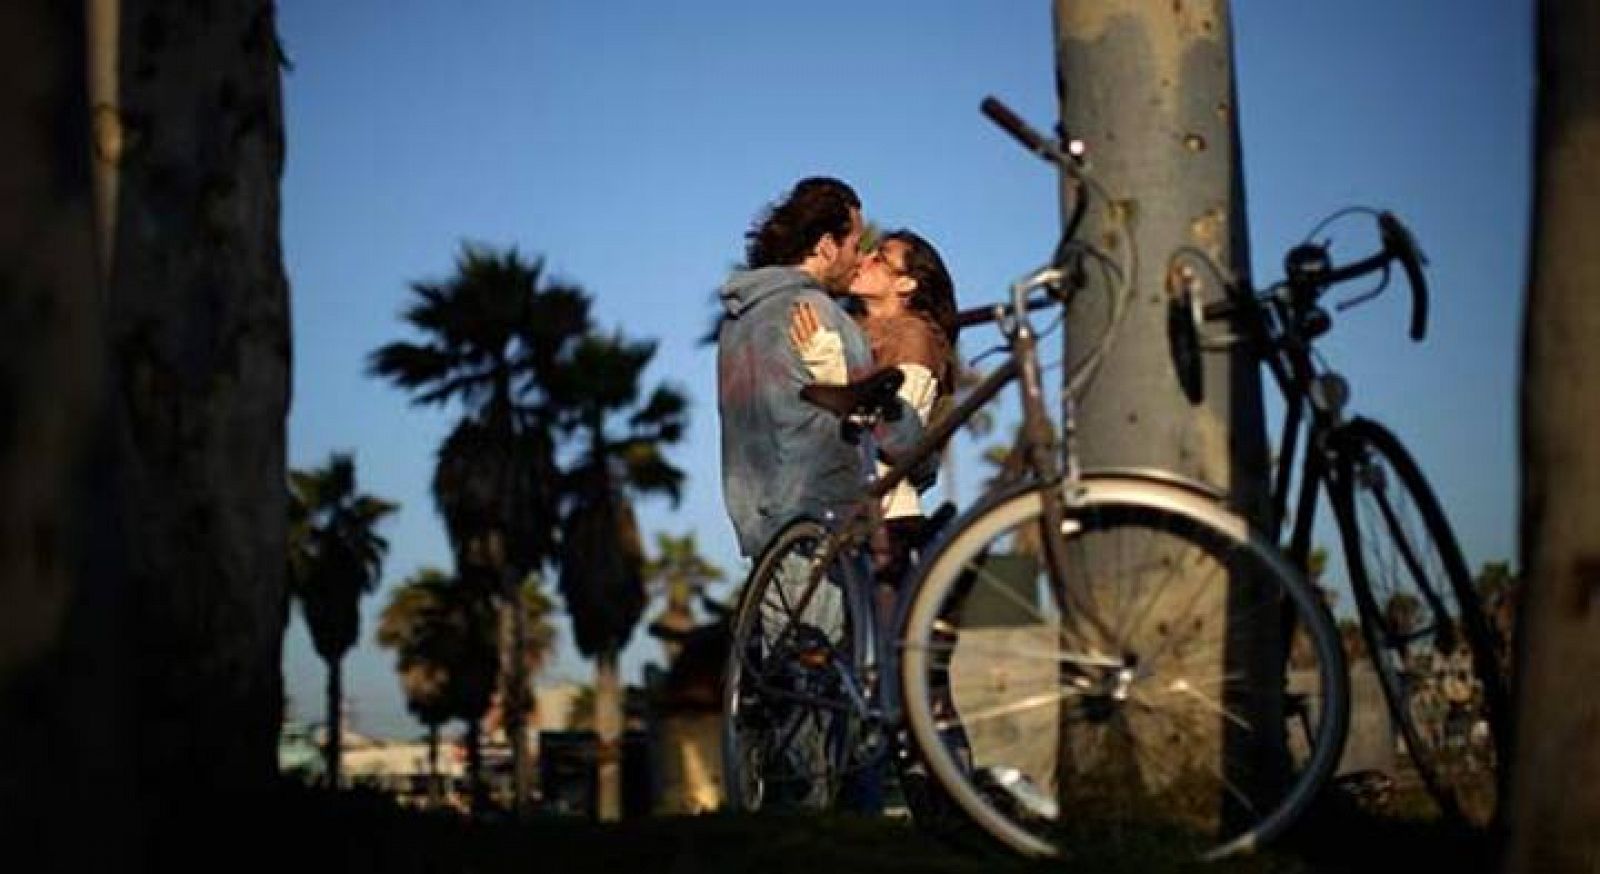 Las parejas españolas fantasean con hacer el amor en sitios públicos como playas o parques